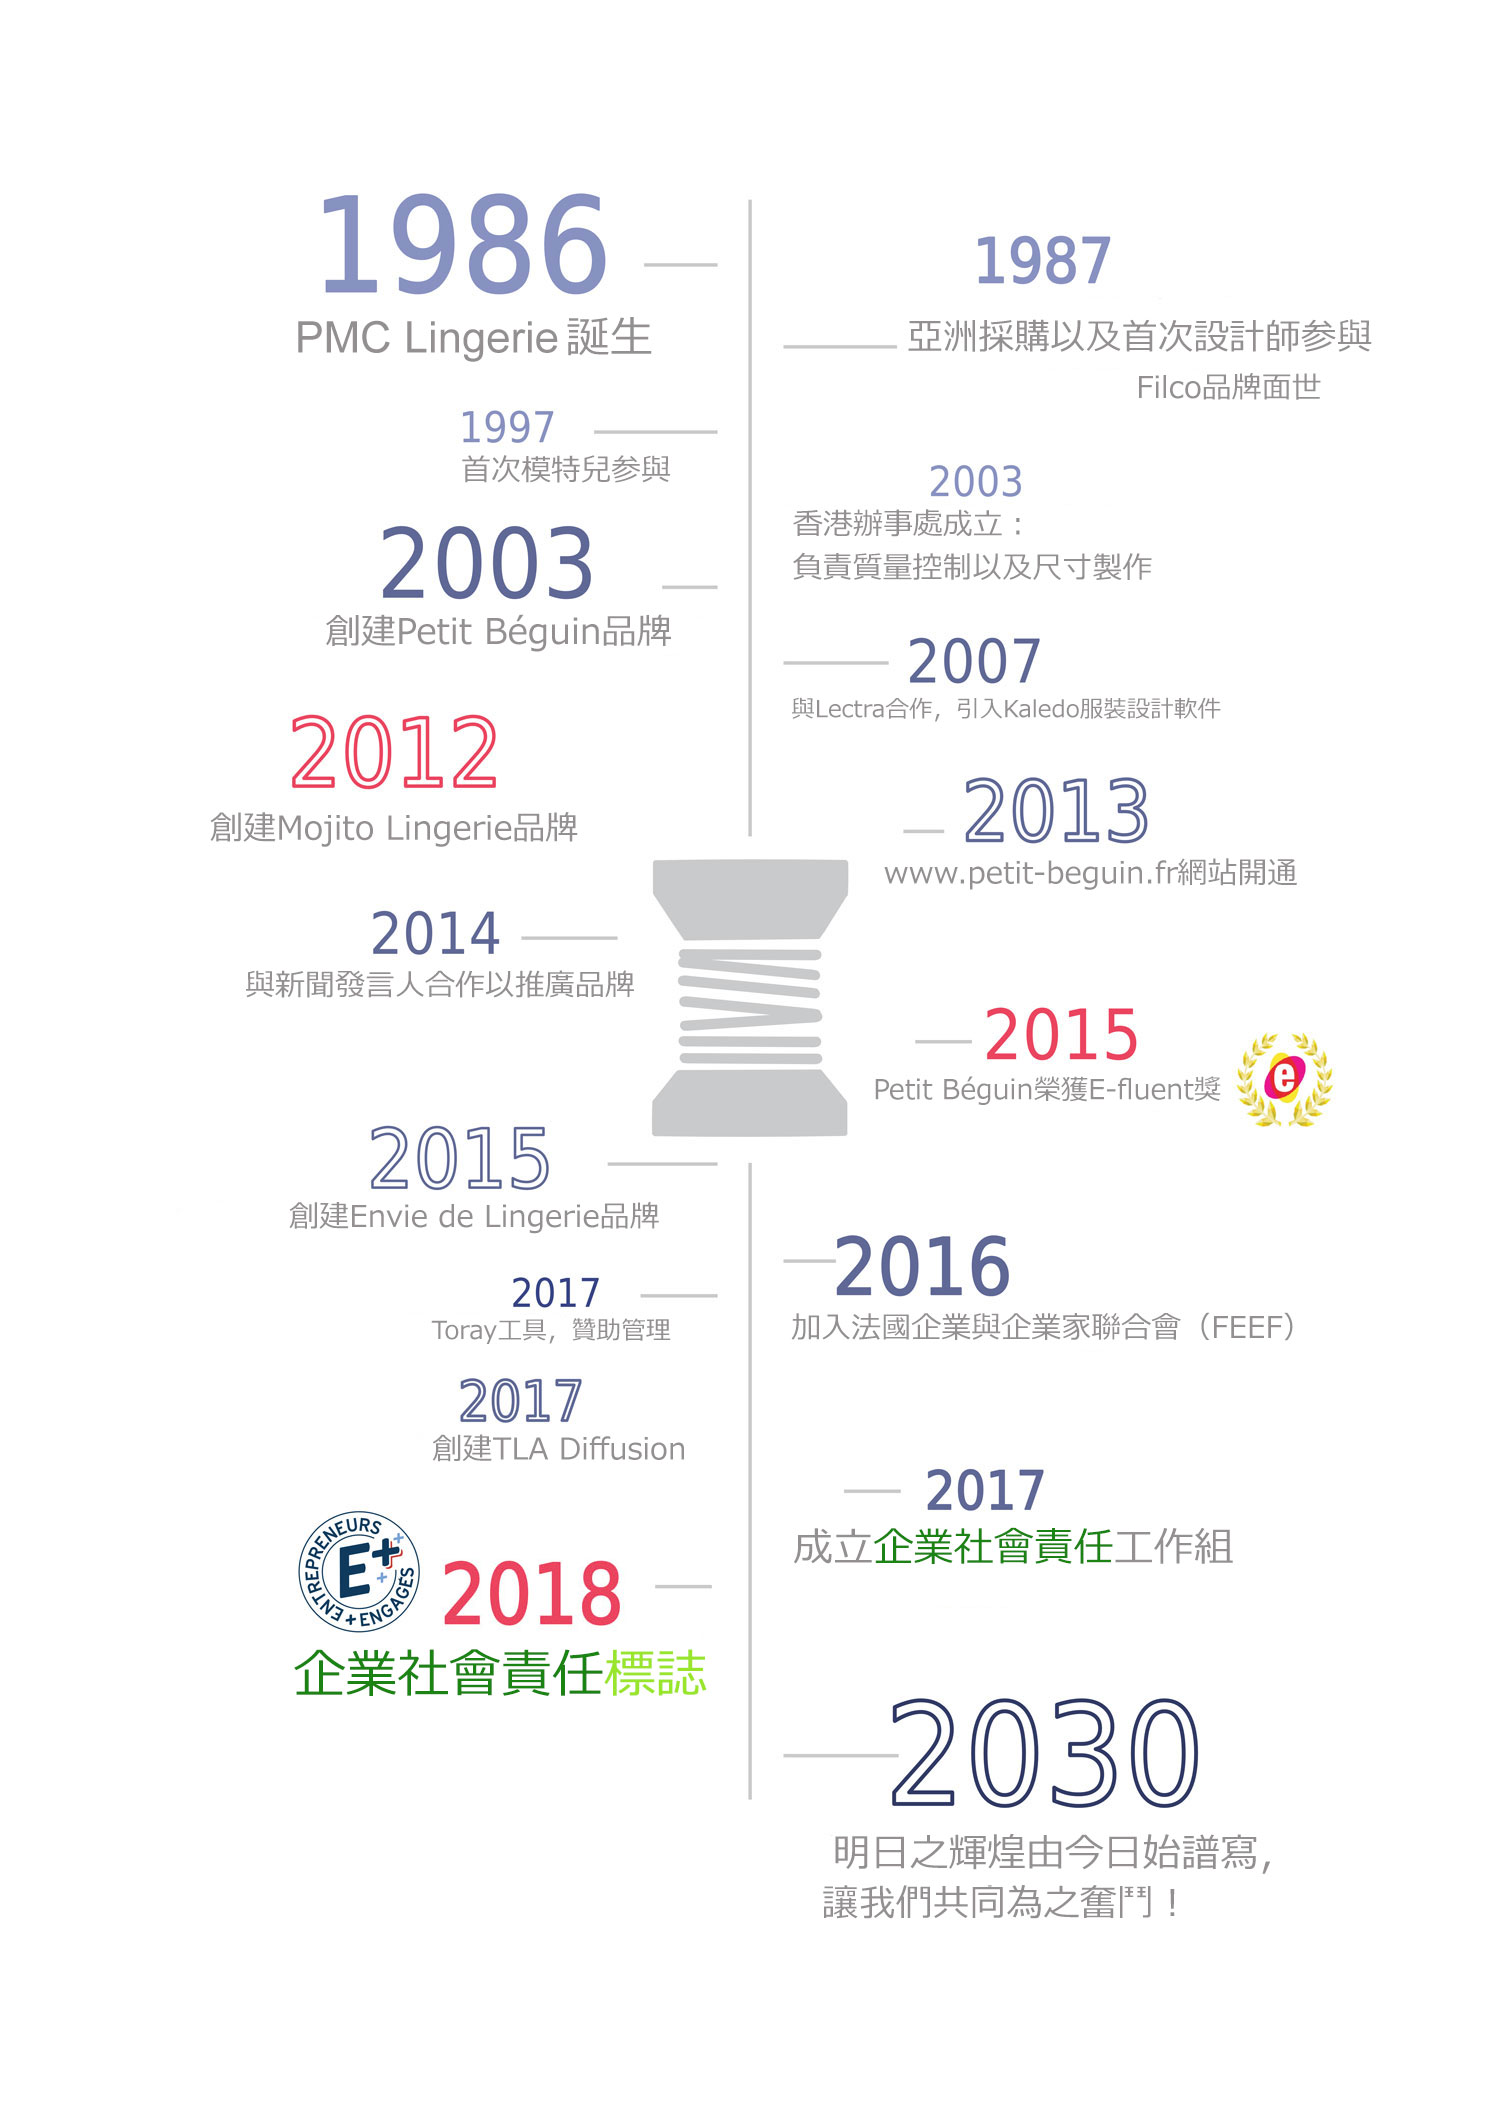 Les-chiffres-clés-PMC-Lingerie-2018-Chinois